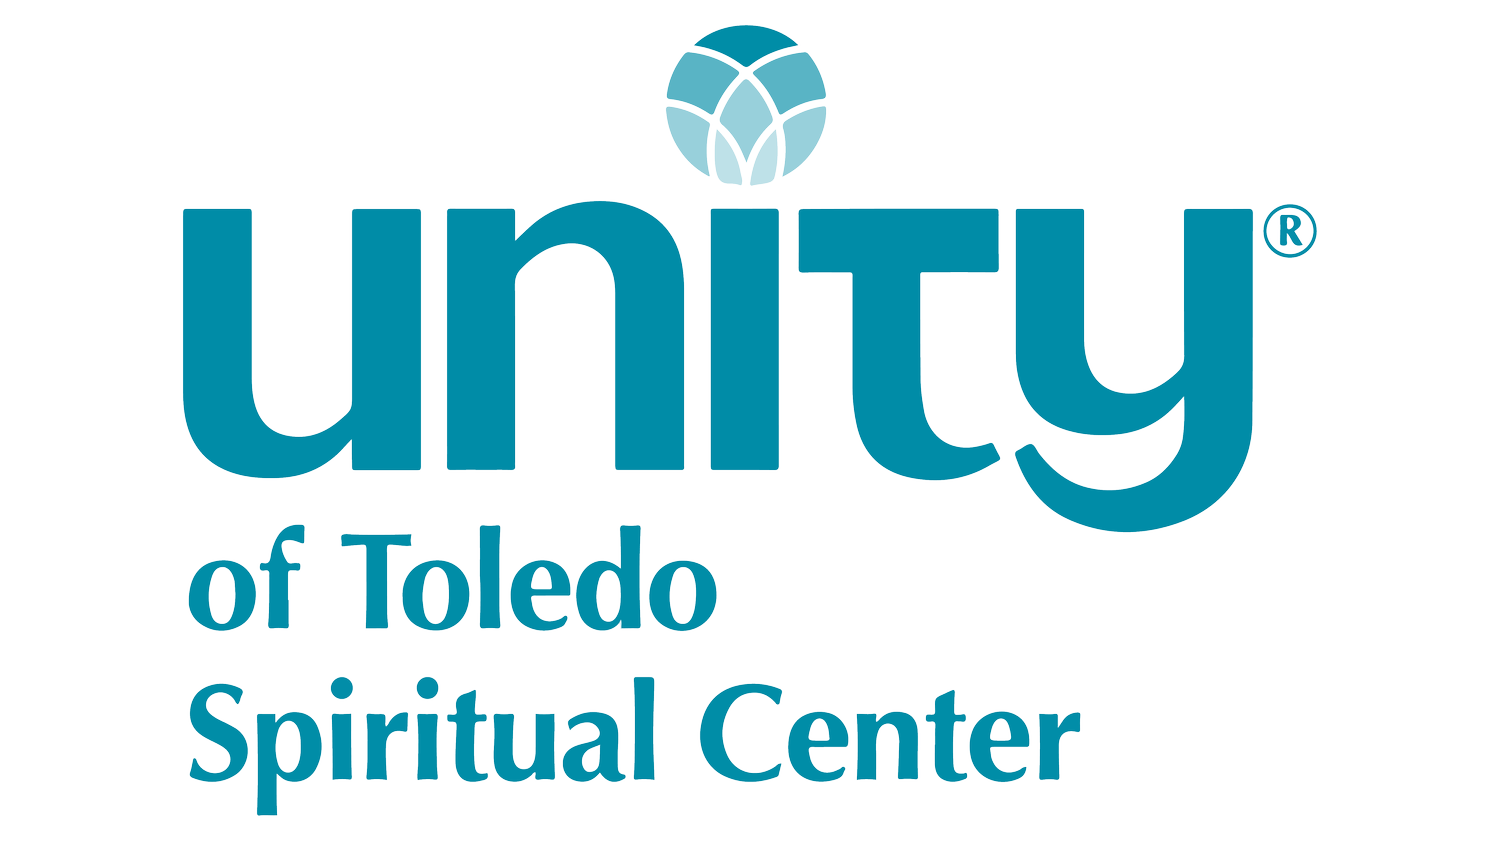 Unity of Toledo